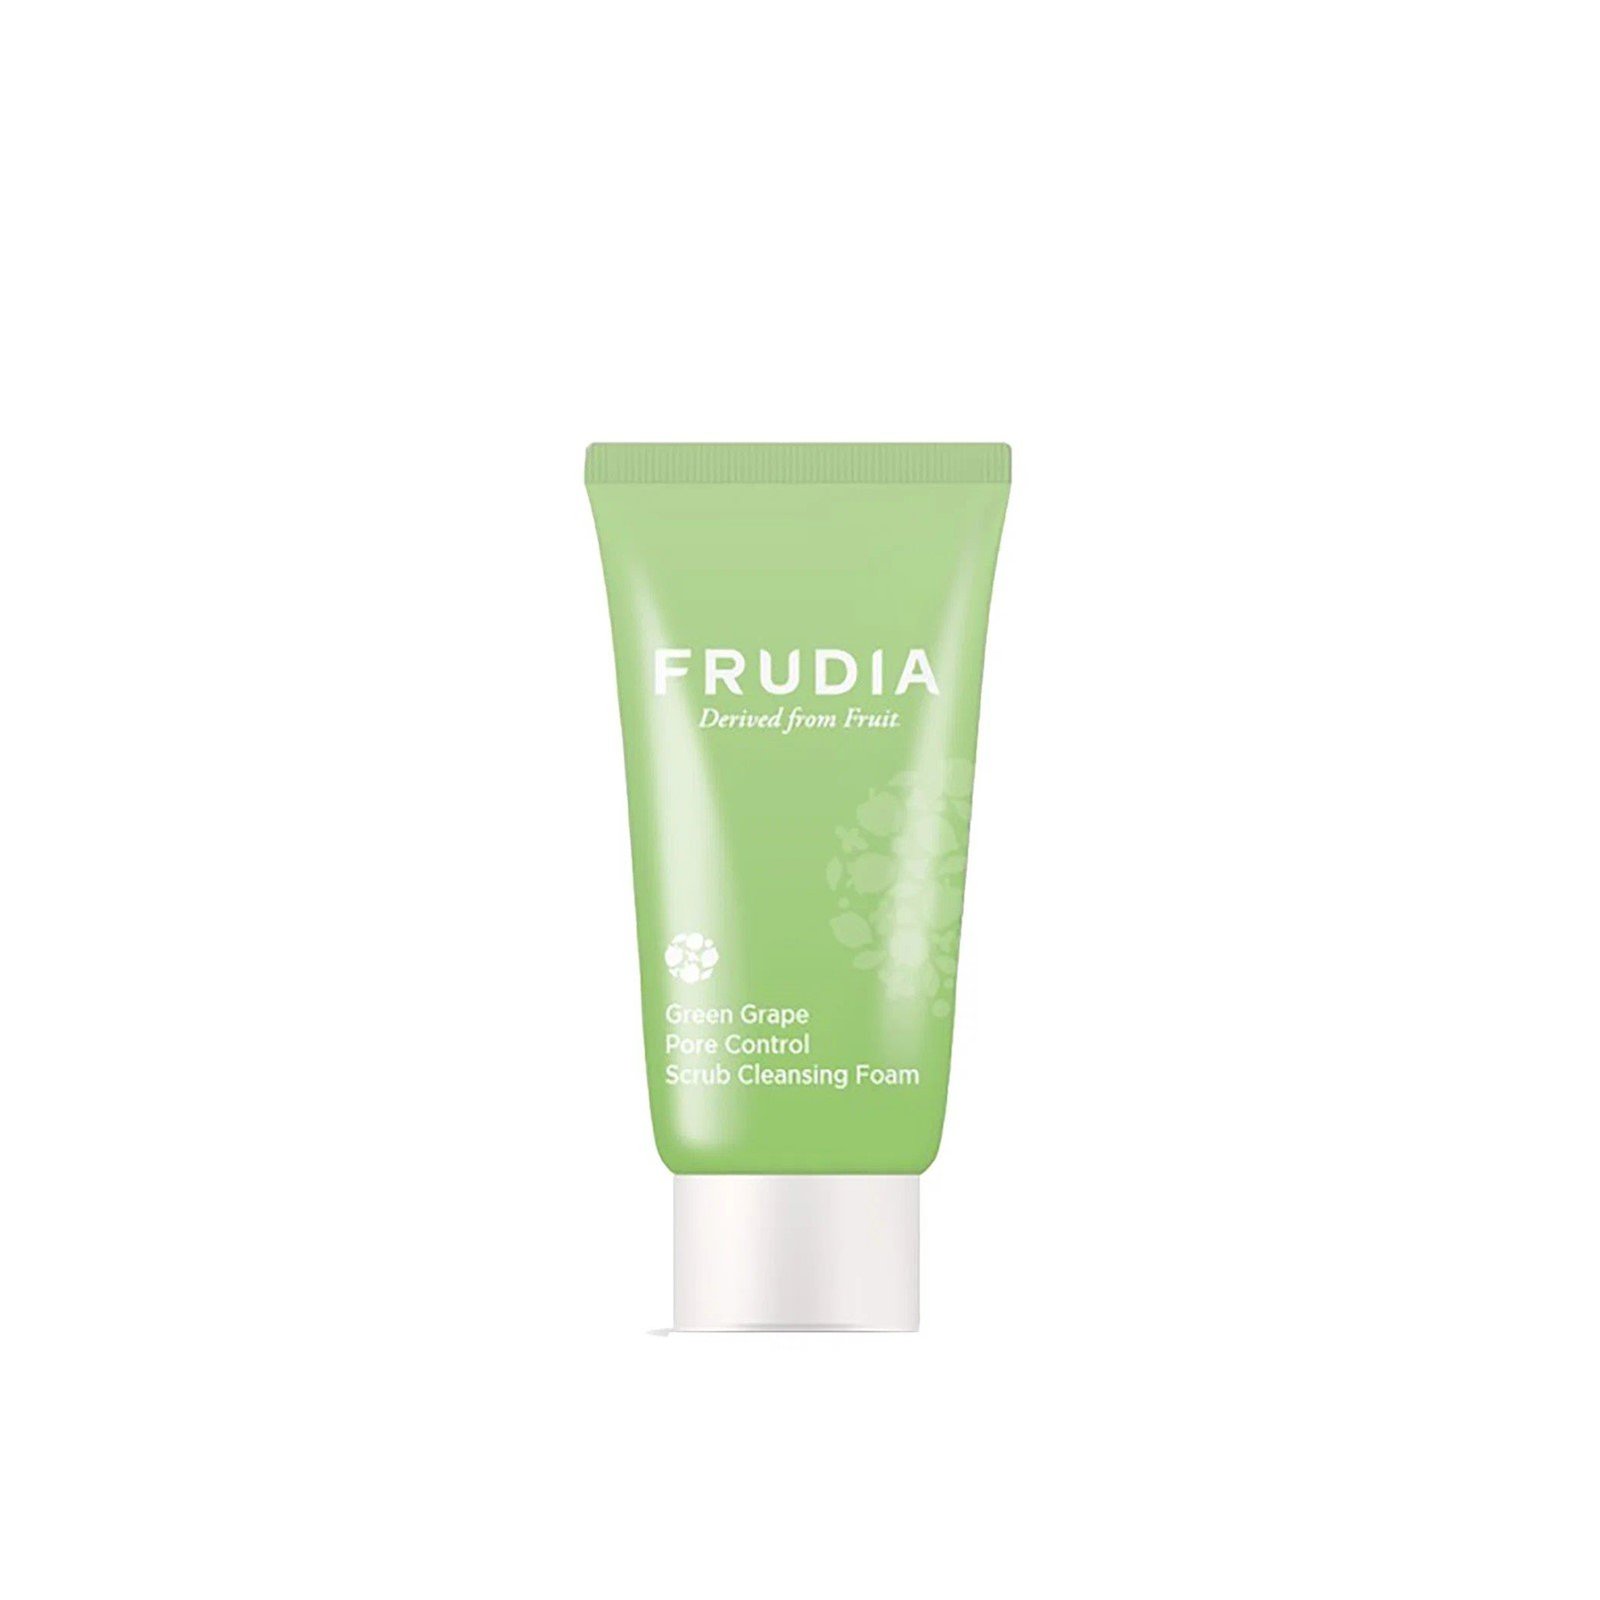 Frudia Green Grape Pore Control Scrub Cleansing Foam 30ml (1.01floz)